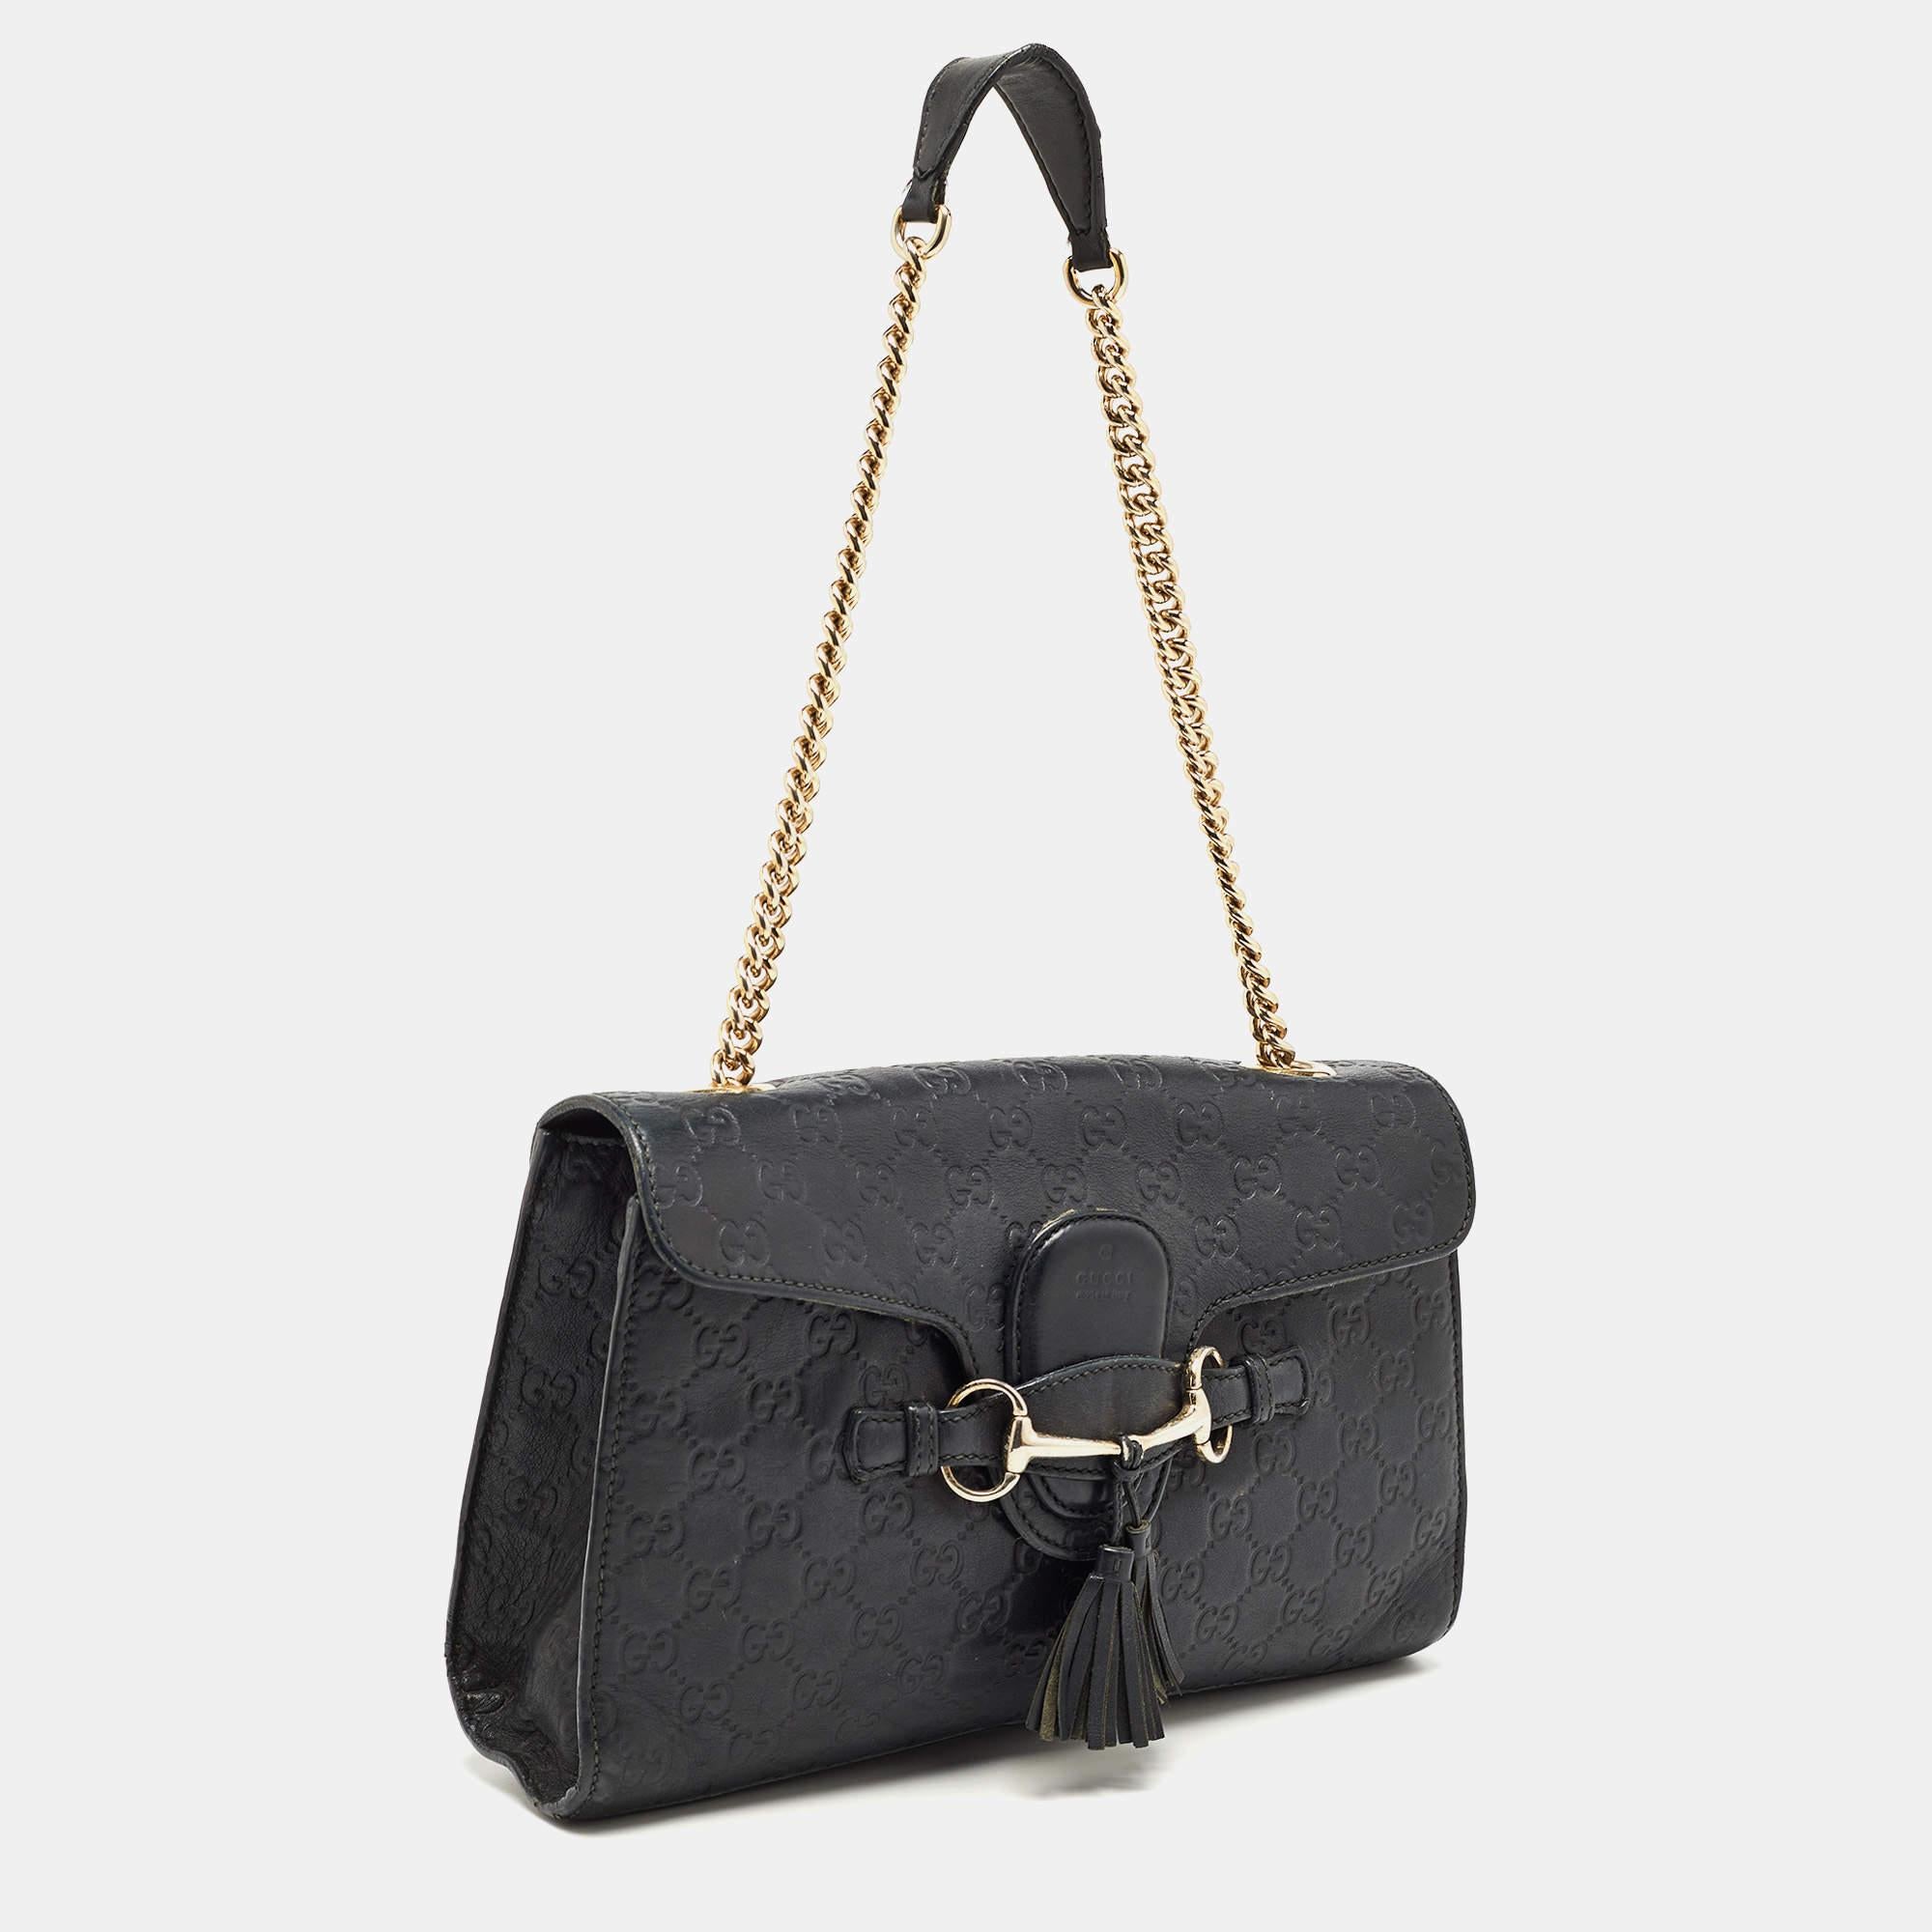 Gucci Black Guccisima Leather Medium Emily Shoulder Bag In Good Condition For Sale In Dubai, Al Qouz 2